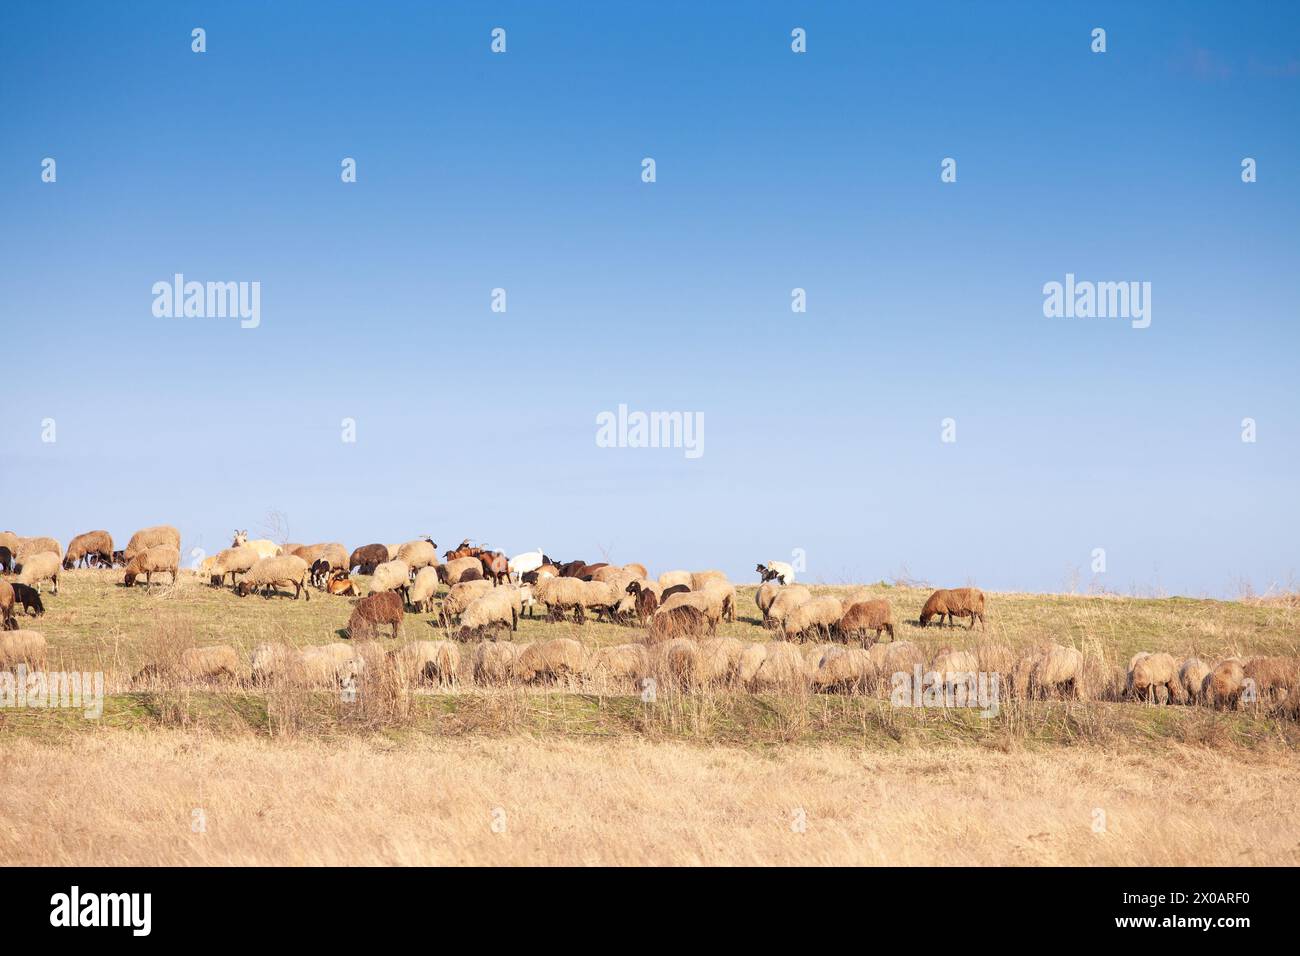 Bild von Schafen, weißen Schafen, stehend auf einer Weide. Schafe sind vierbeinigen, Wiederkäuer Säugetiere in der Regel als Vieh gehalten. Wie die meisten Wiederkäuer, Shee Stockfoto